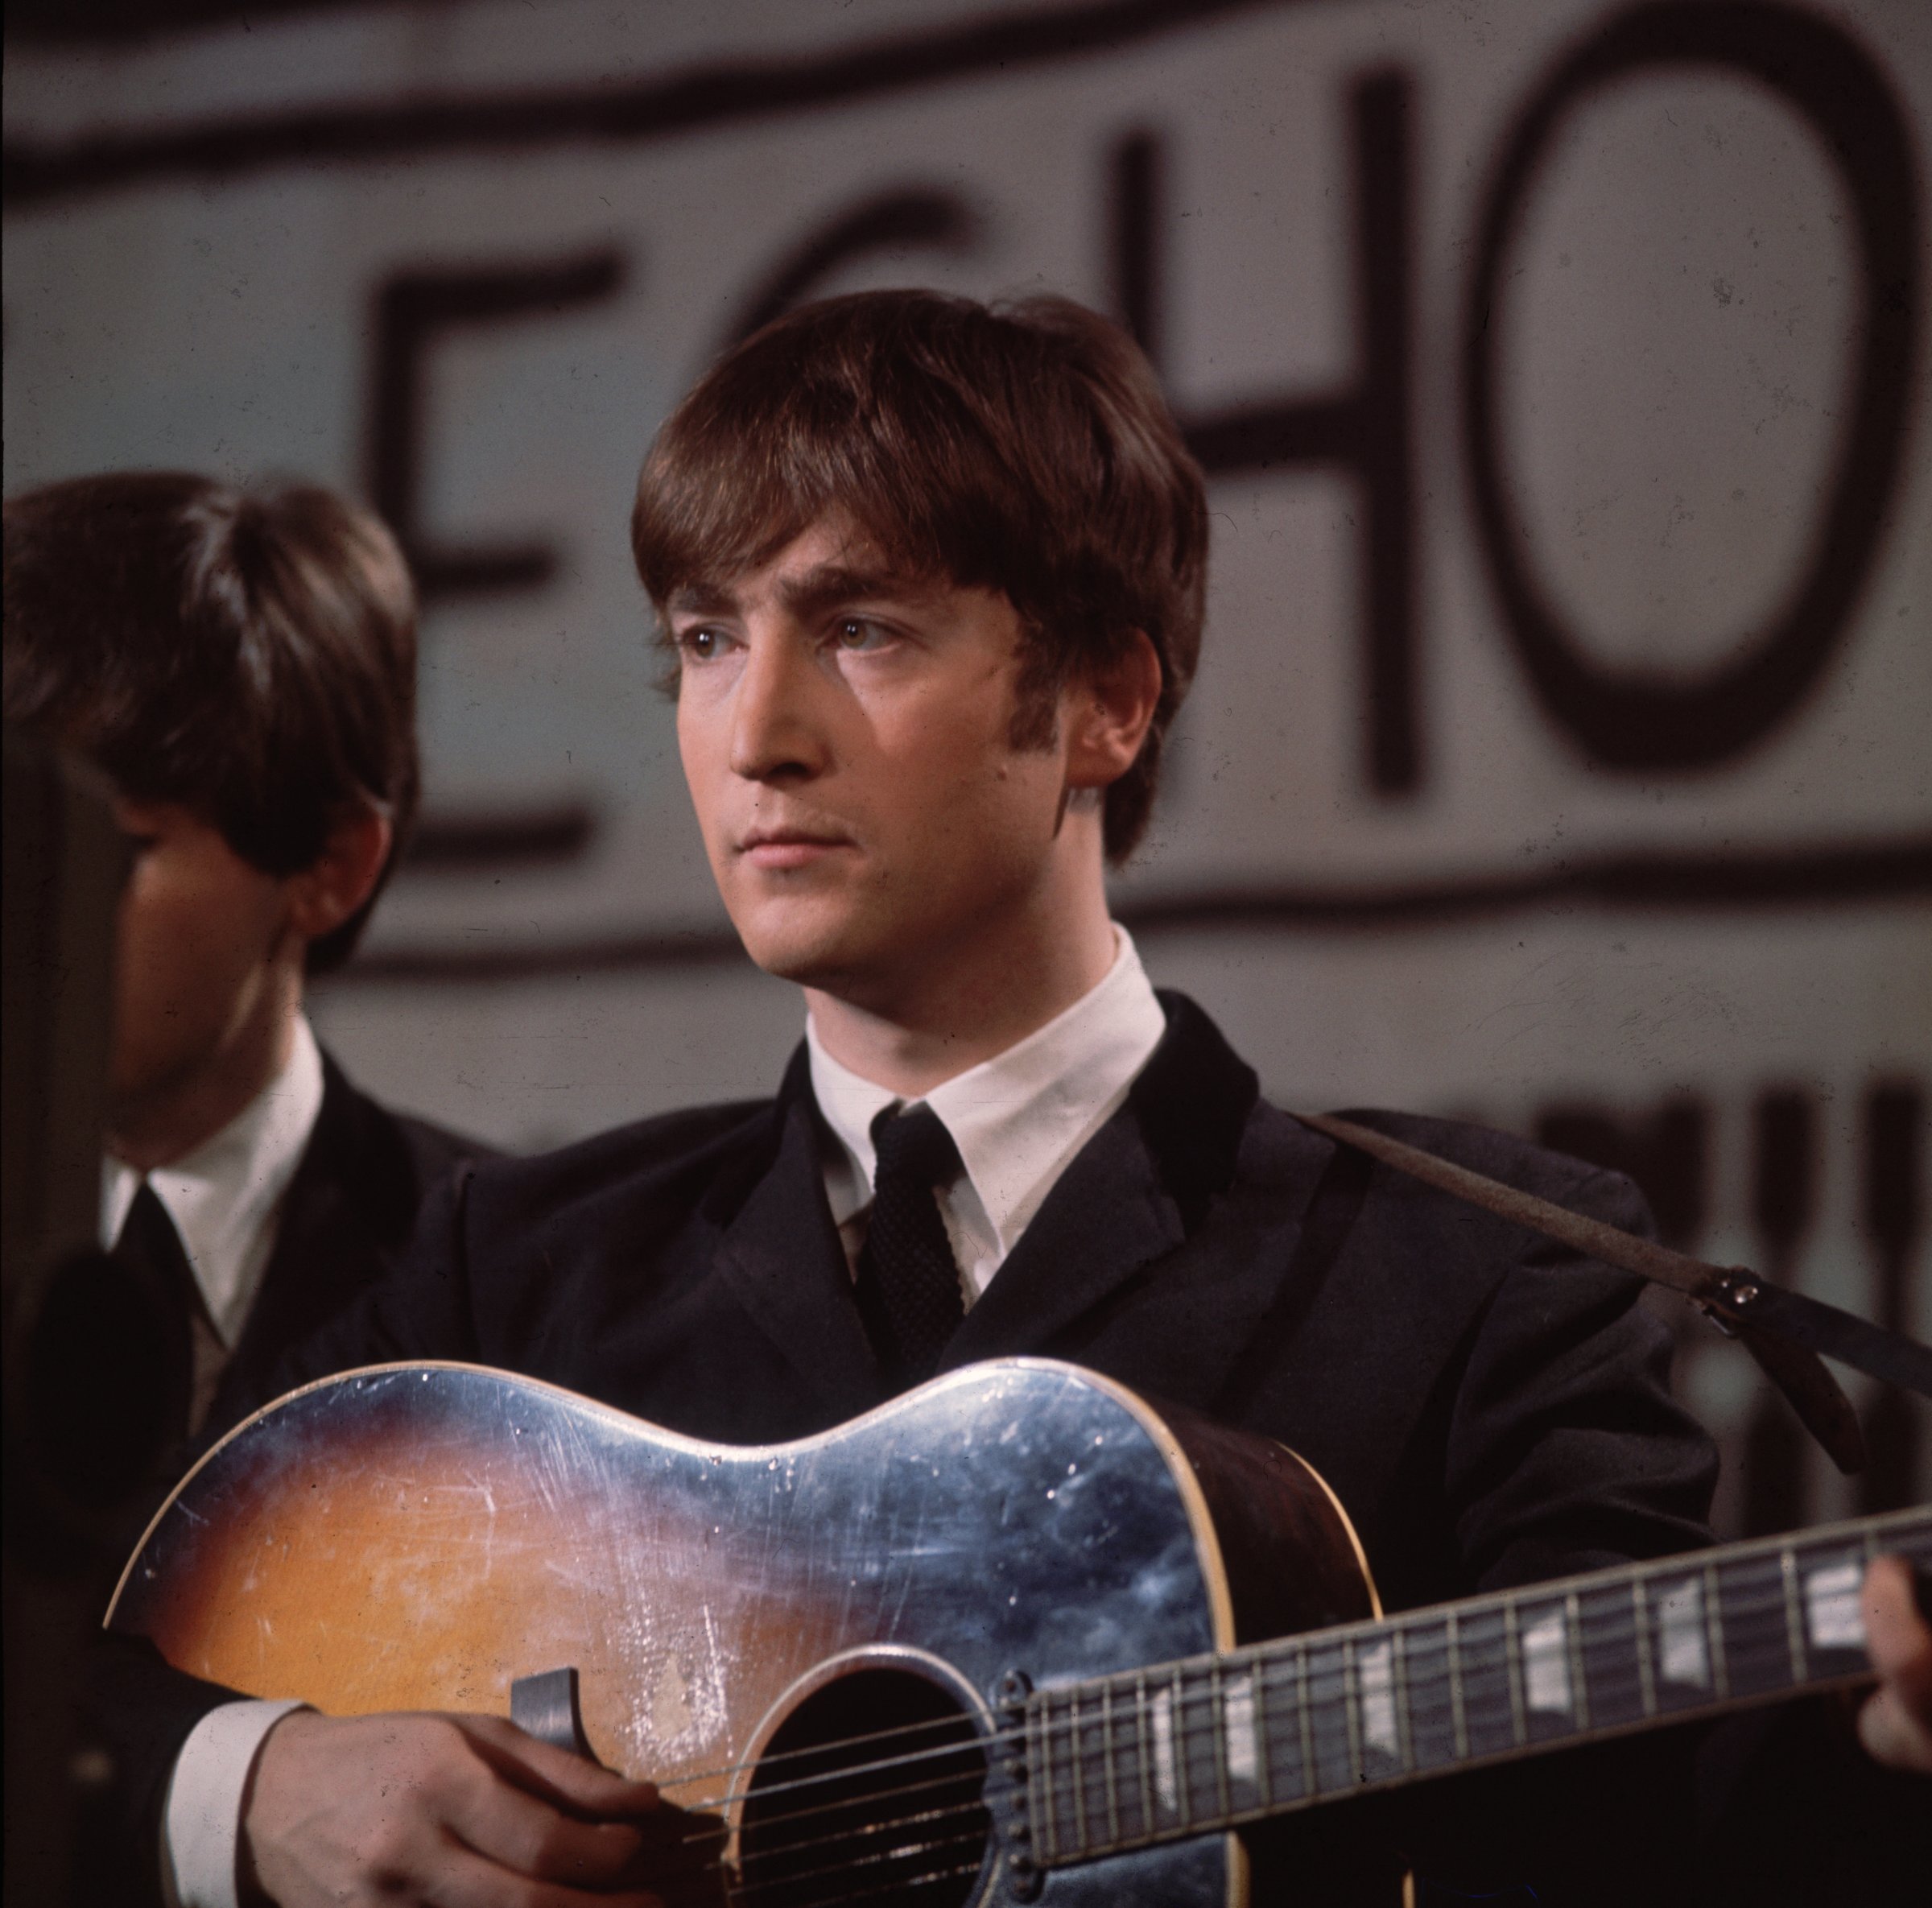 John Lennon Gibson guitar